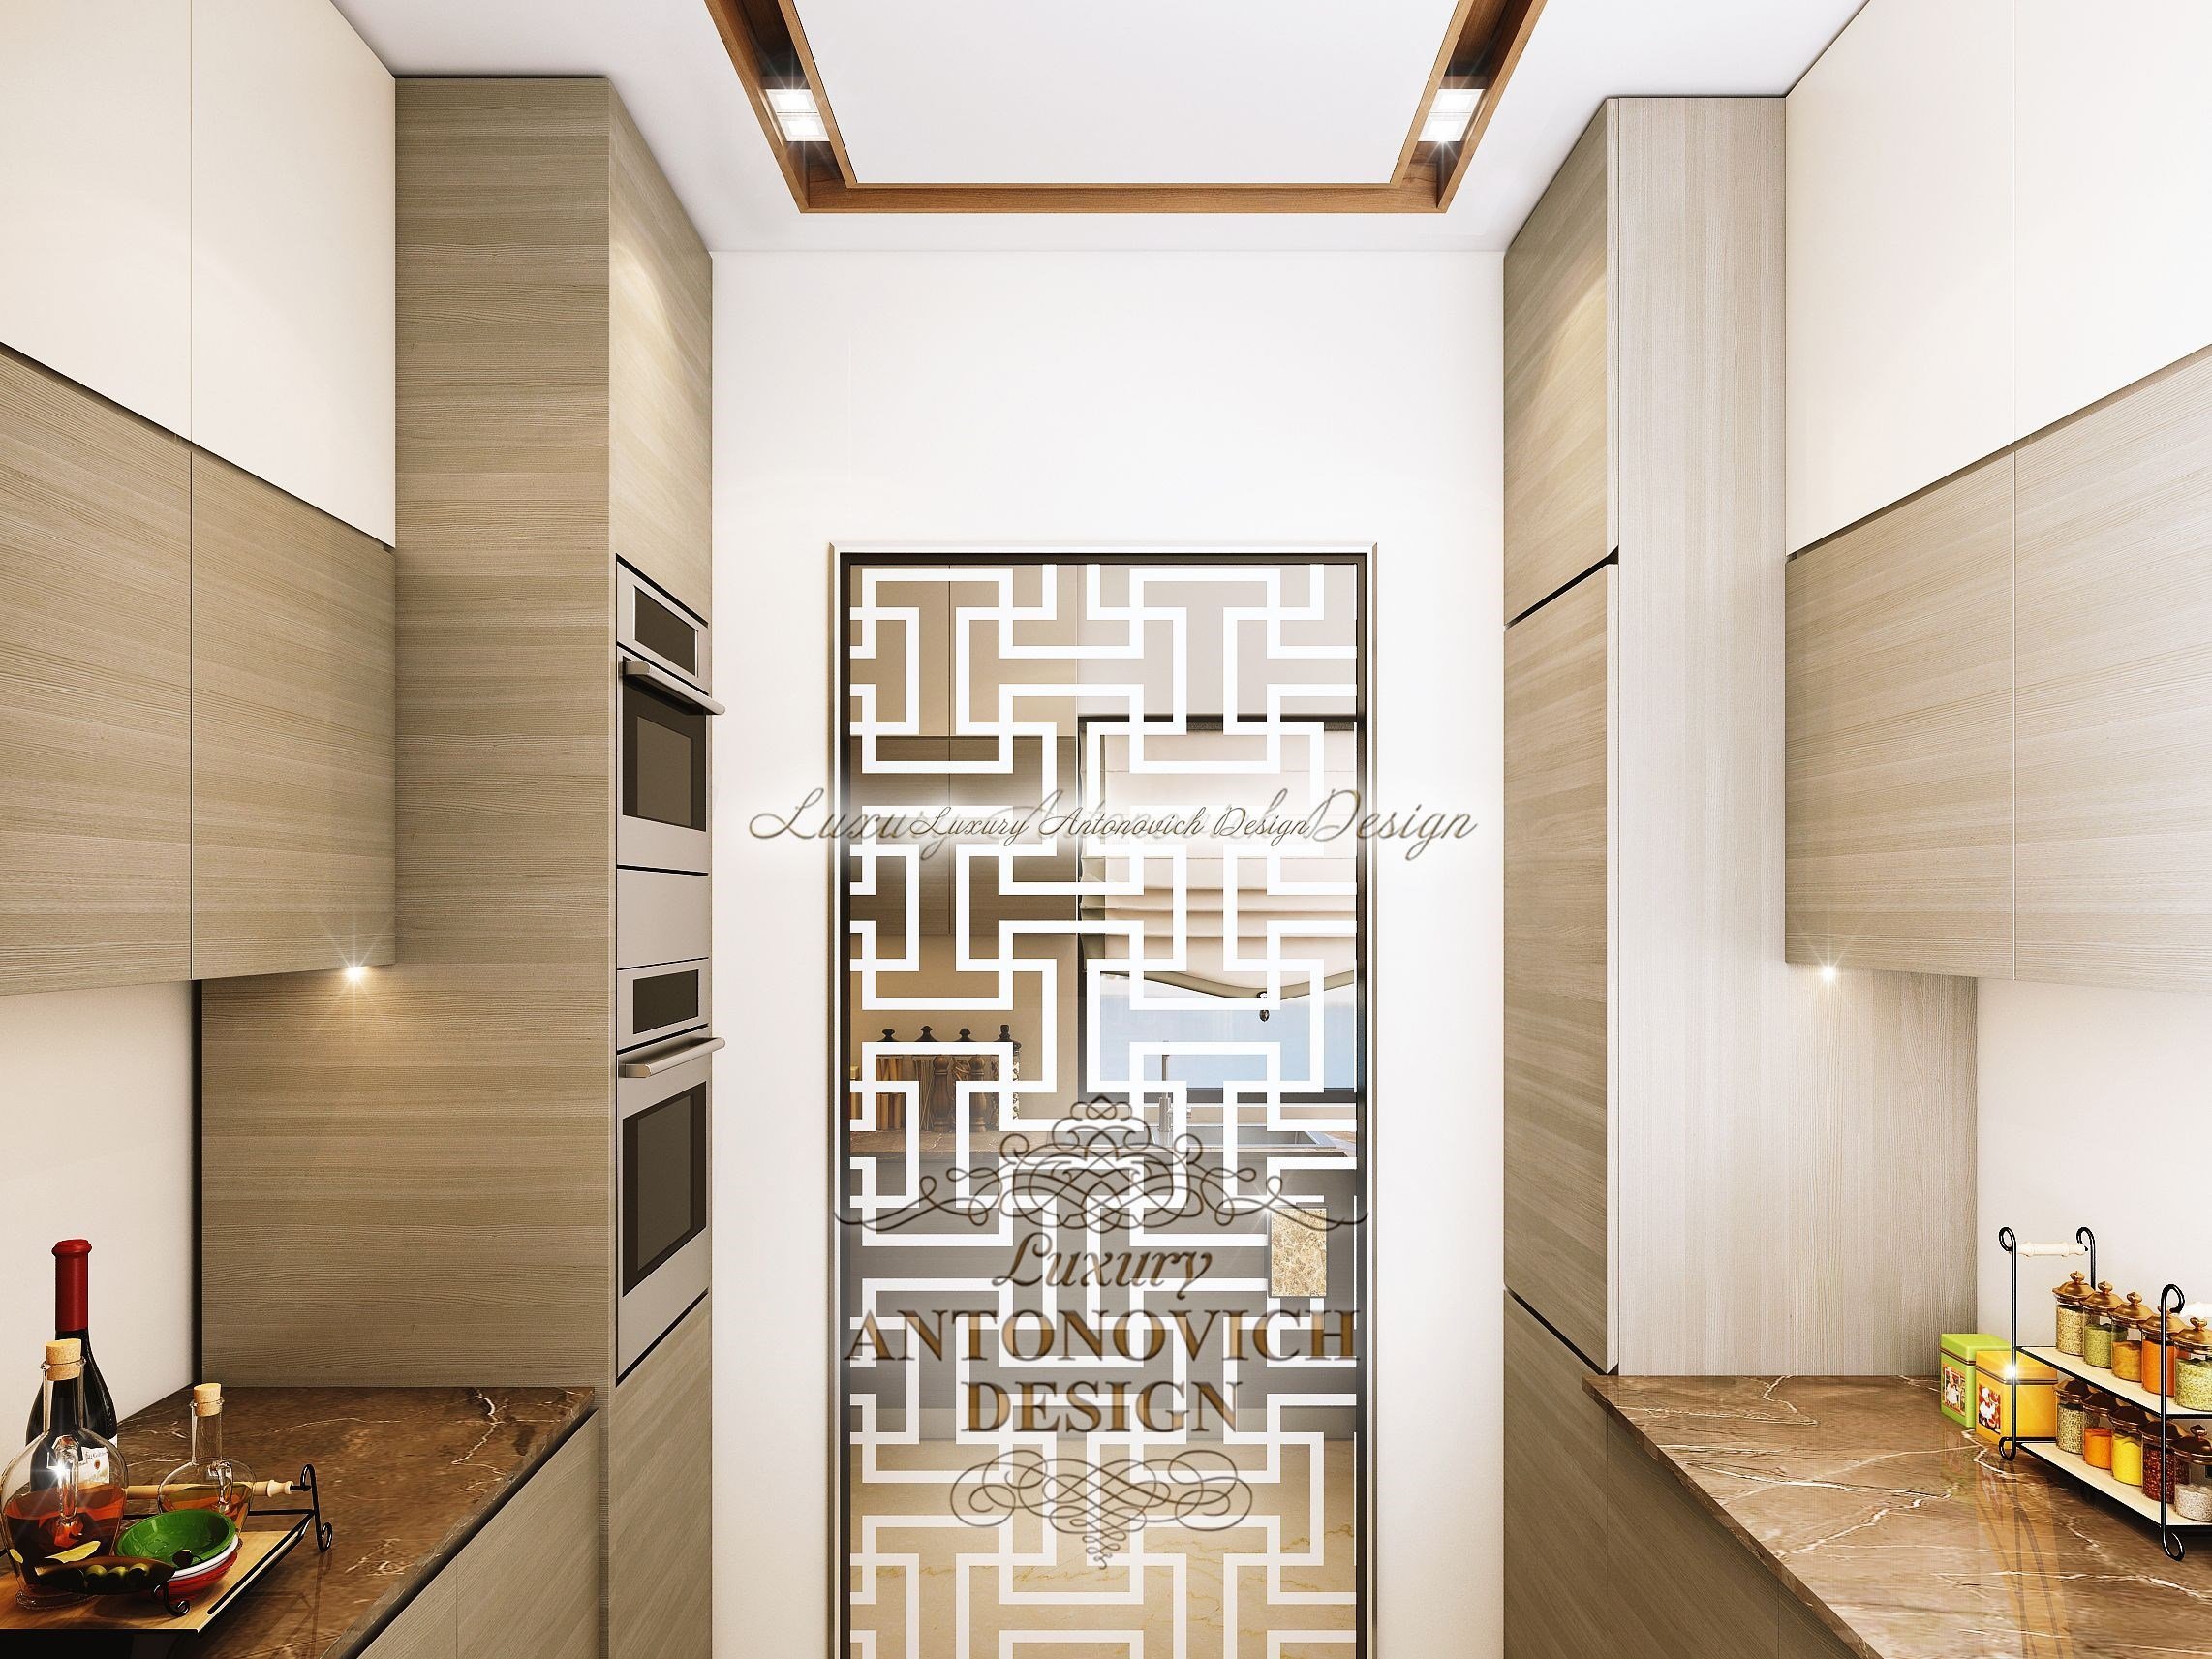 Фешенебельный современный дизайн интерьера спальни пентхауса в Майями студии Luxury Antonovich Design